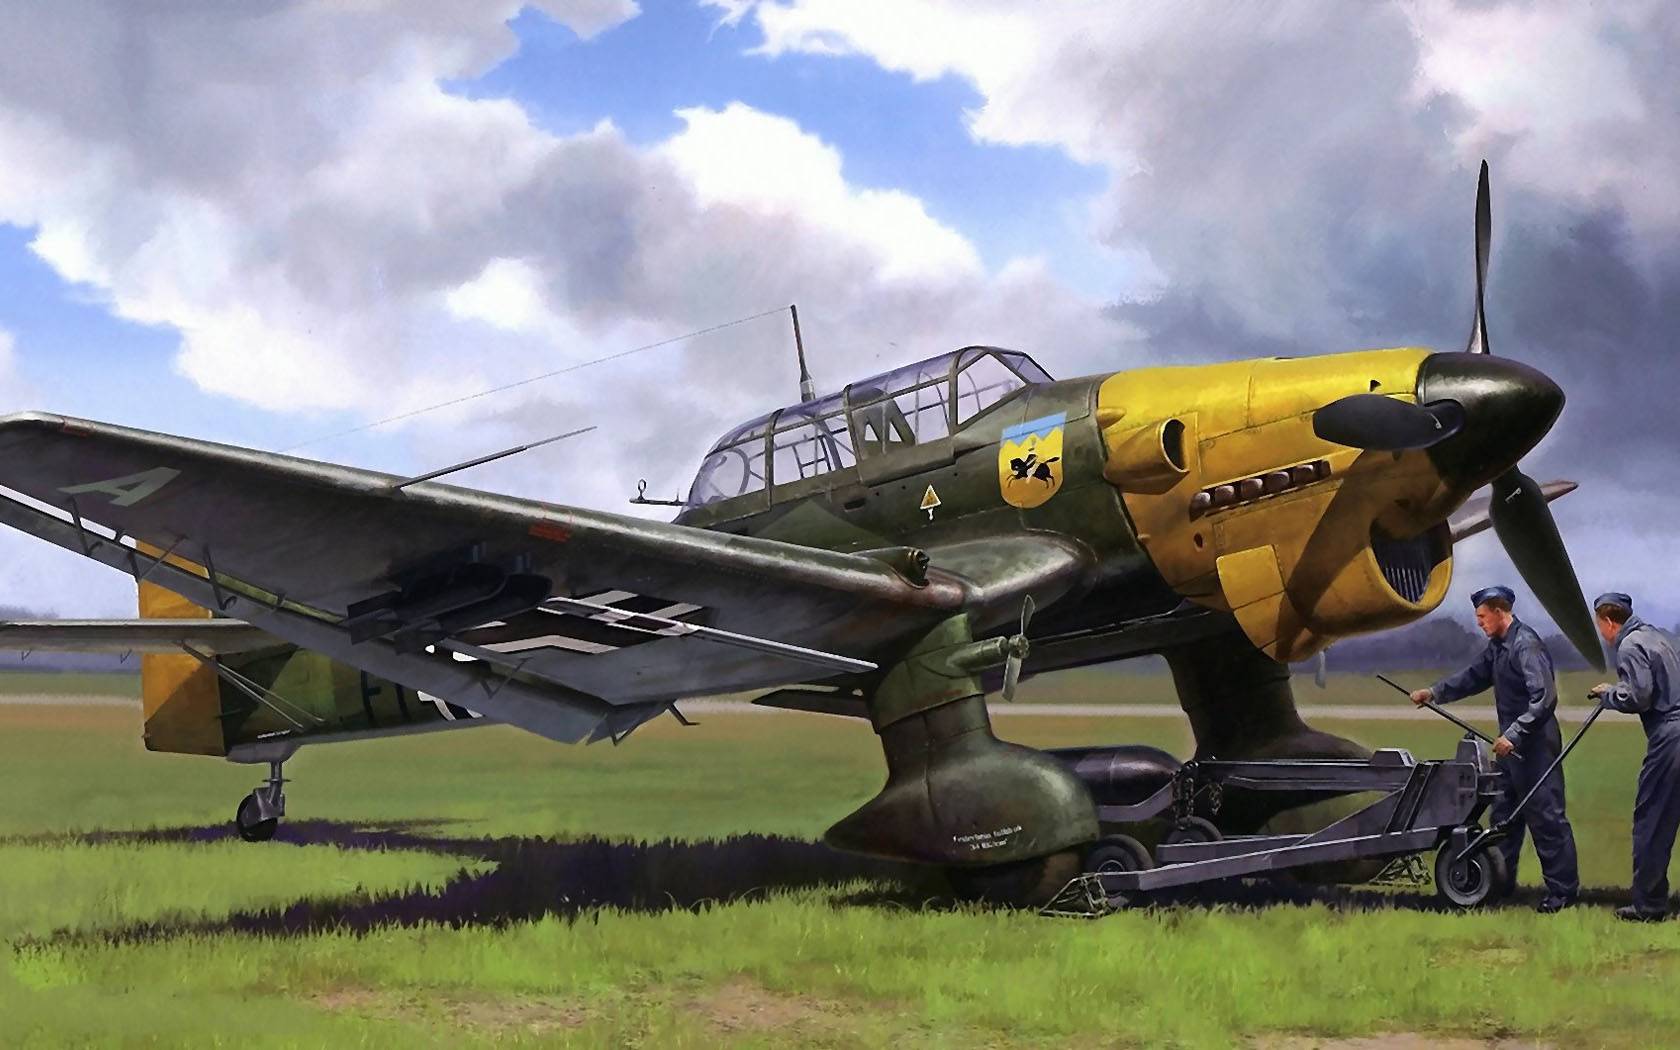 Пикирующий бомбардировщик «юнкерс» ju-87 «штука» - самолет люфтваффе второй мировой войны - фото самолета юнкерс ju-87 штука, характеристики, кабина, крылья, вооружение - самолеты германии - люфтваффе